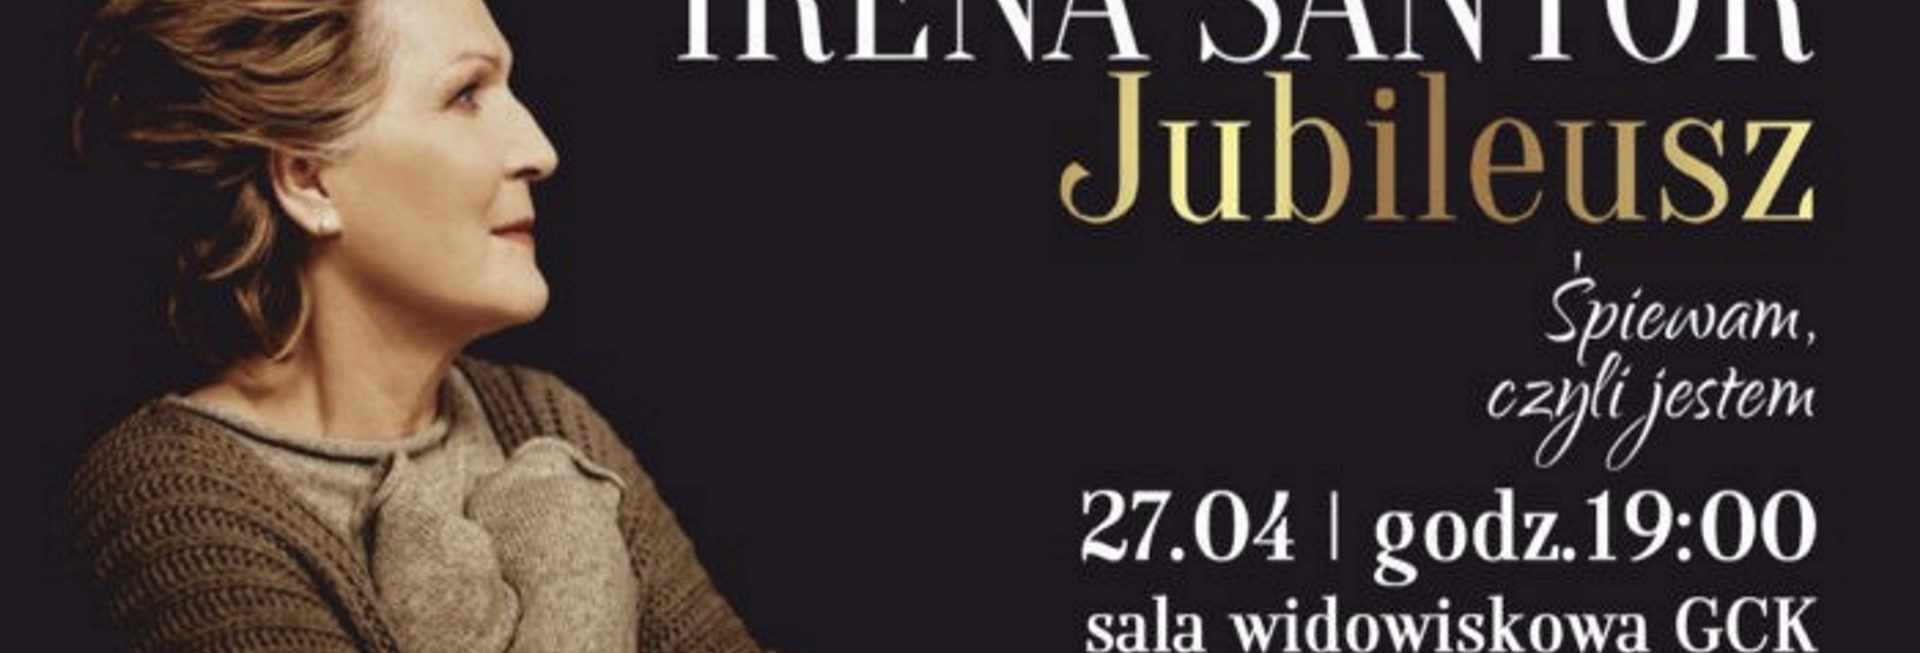 Plakat zapraszający do Giżycka na Koncert Jubileuszowy Ireny Santor - Giżycko 2020. Na plakacie zdjęcie piosenkarki Ireny Santor oraz informacja kiedy i gdzie odbędzie się koncert. 